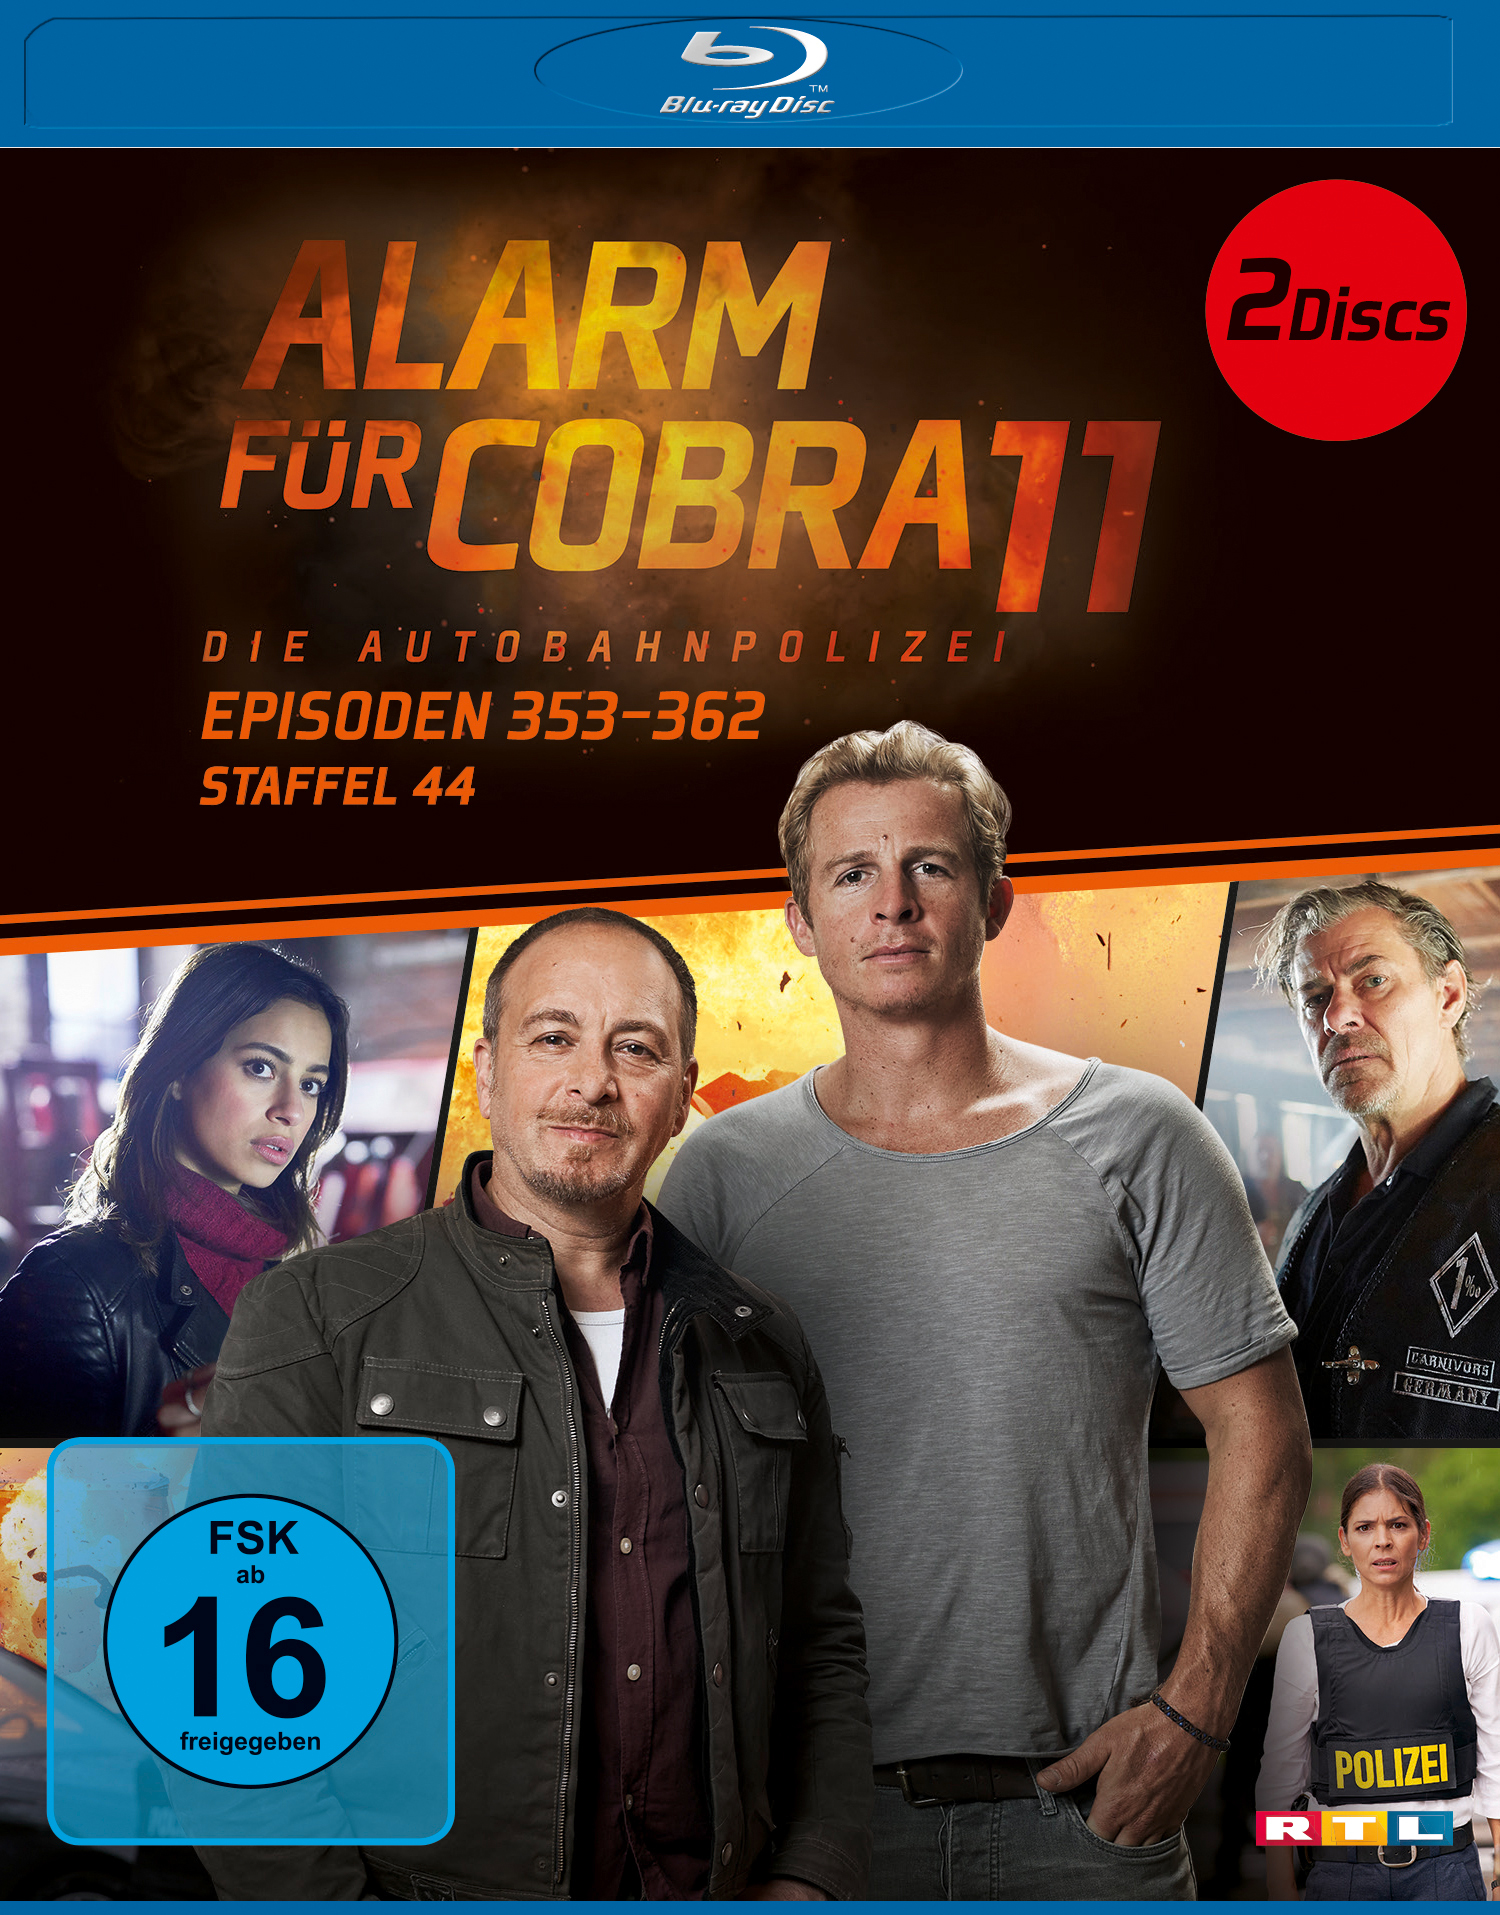 ALARM FÜR 11 COBRA Blu-ray 44.STAFFEL